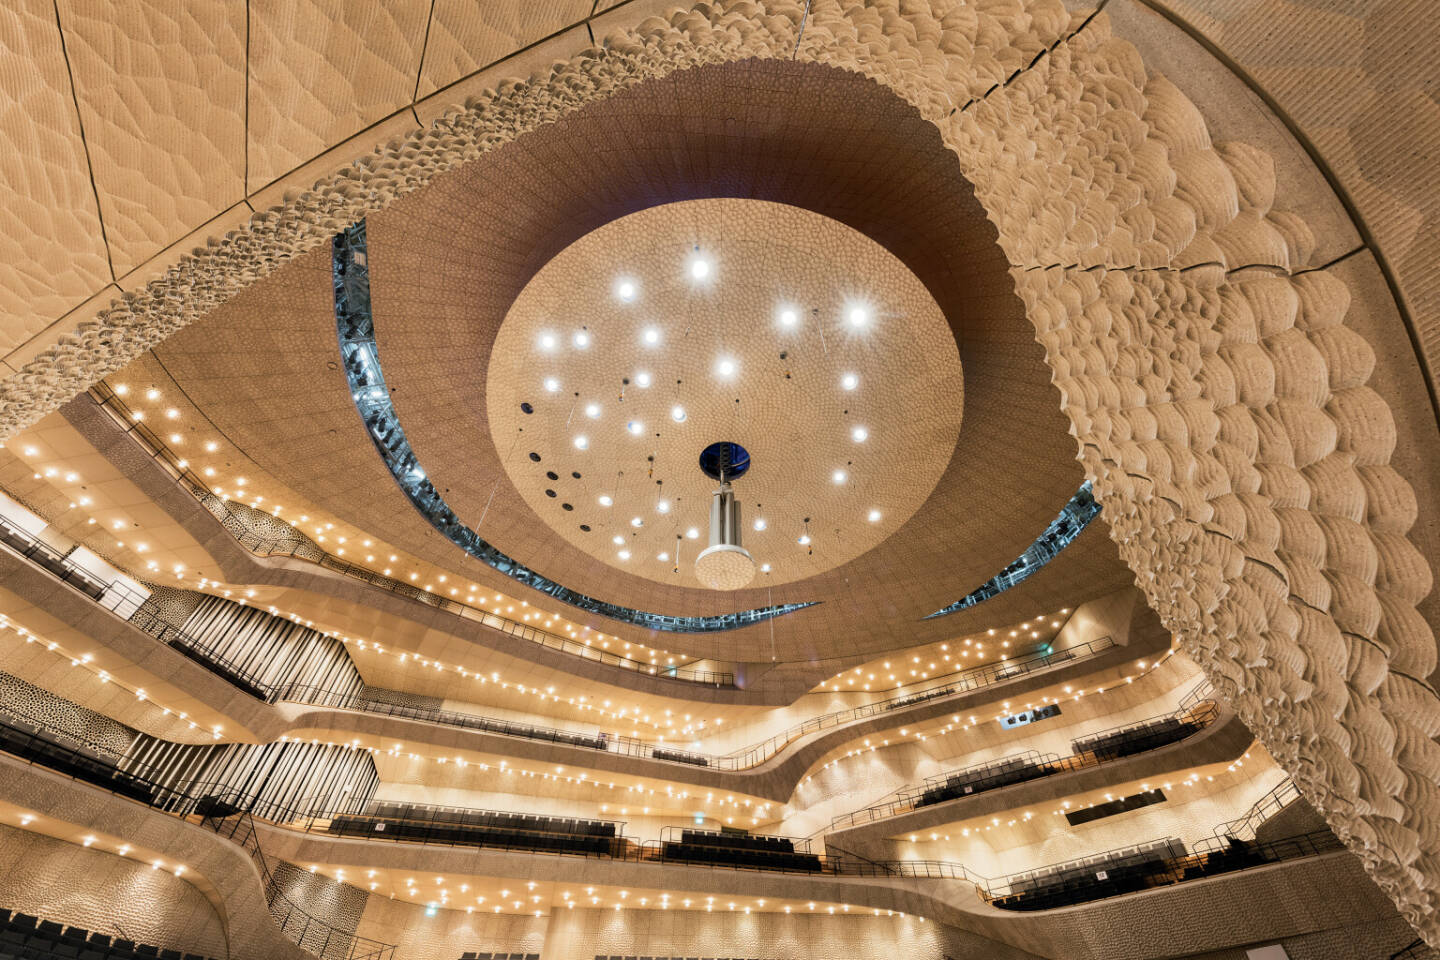 Zumtobel-Sonderleuchten für die Elbphilharmonie in Hamburg, darunter 1.200 mundgeblasene Glaskugelleuchten für den Konzertsaal. © Zumtobel | Fotograf: Michael Zapf